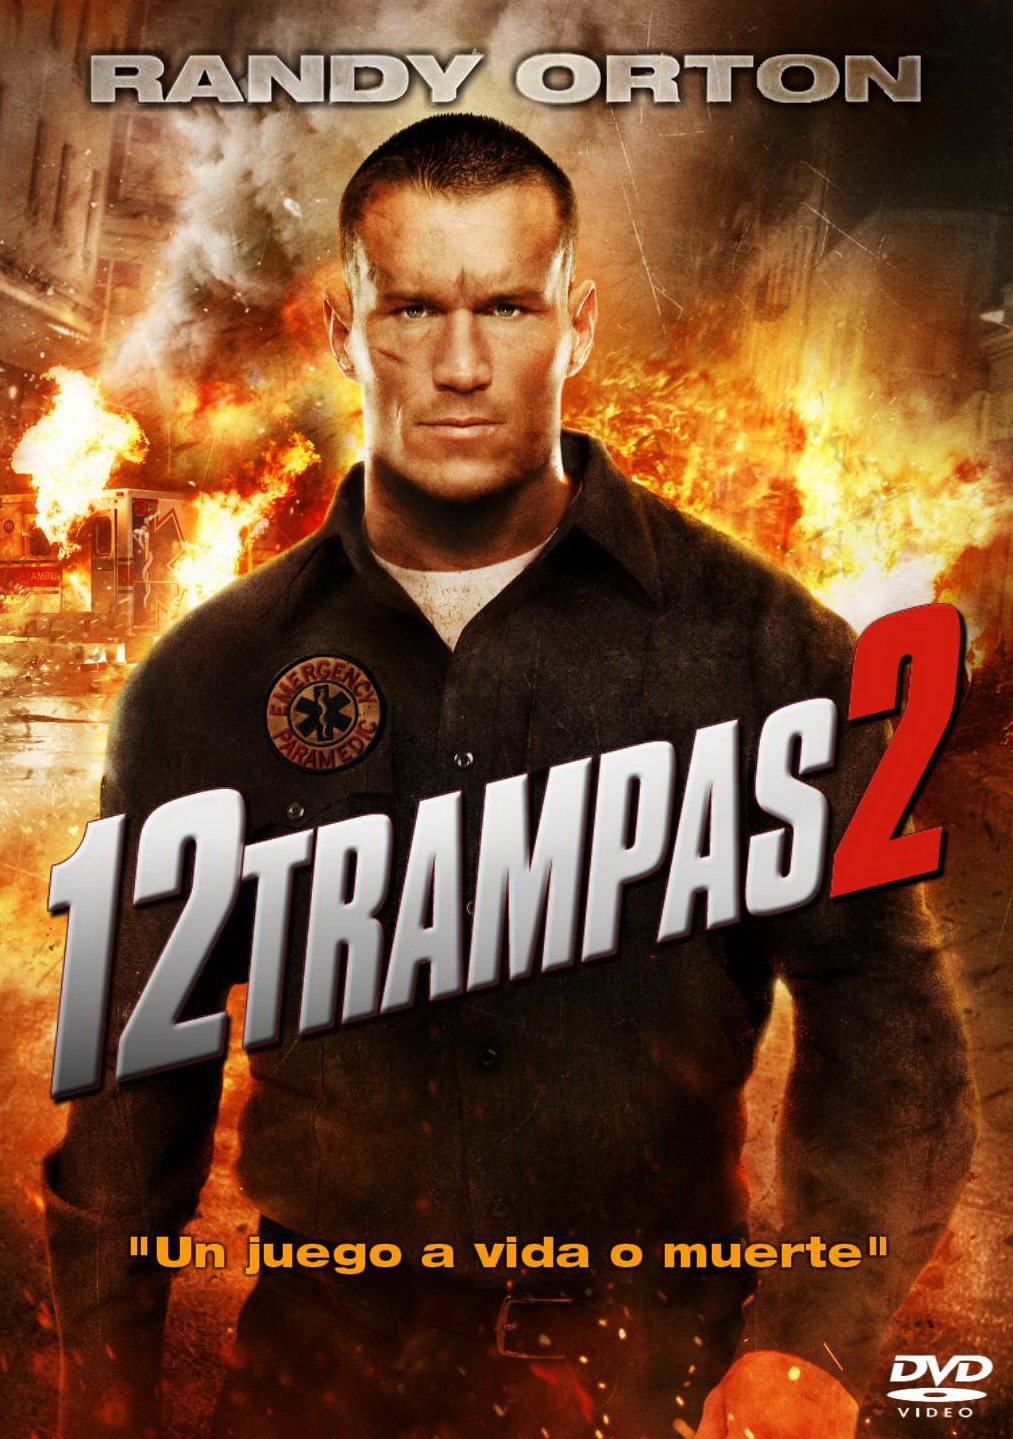 12 Trampas 2 (2013)